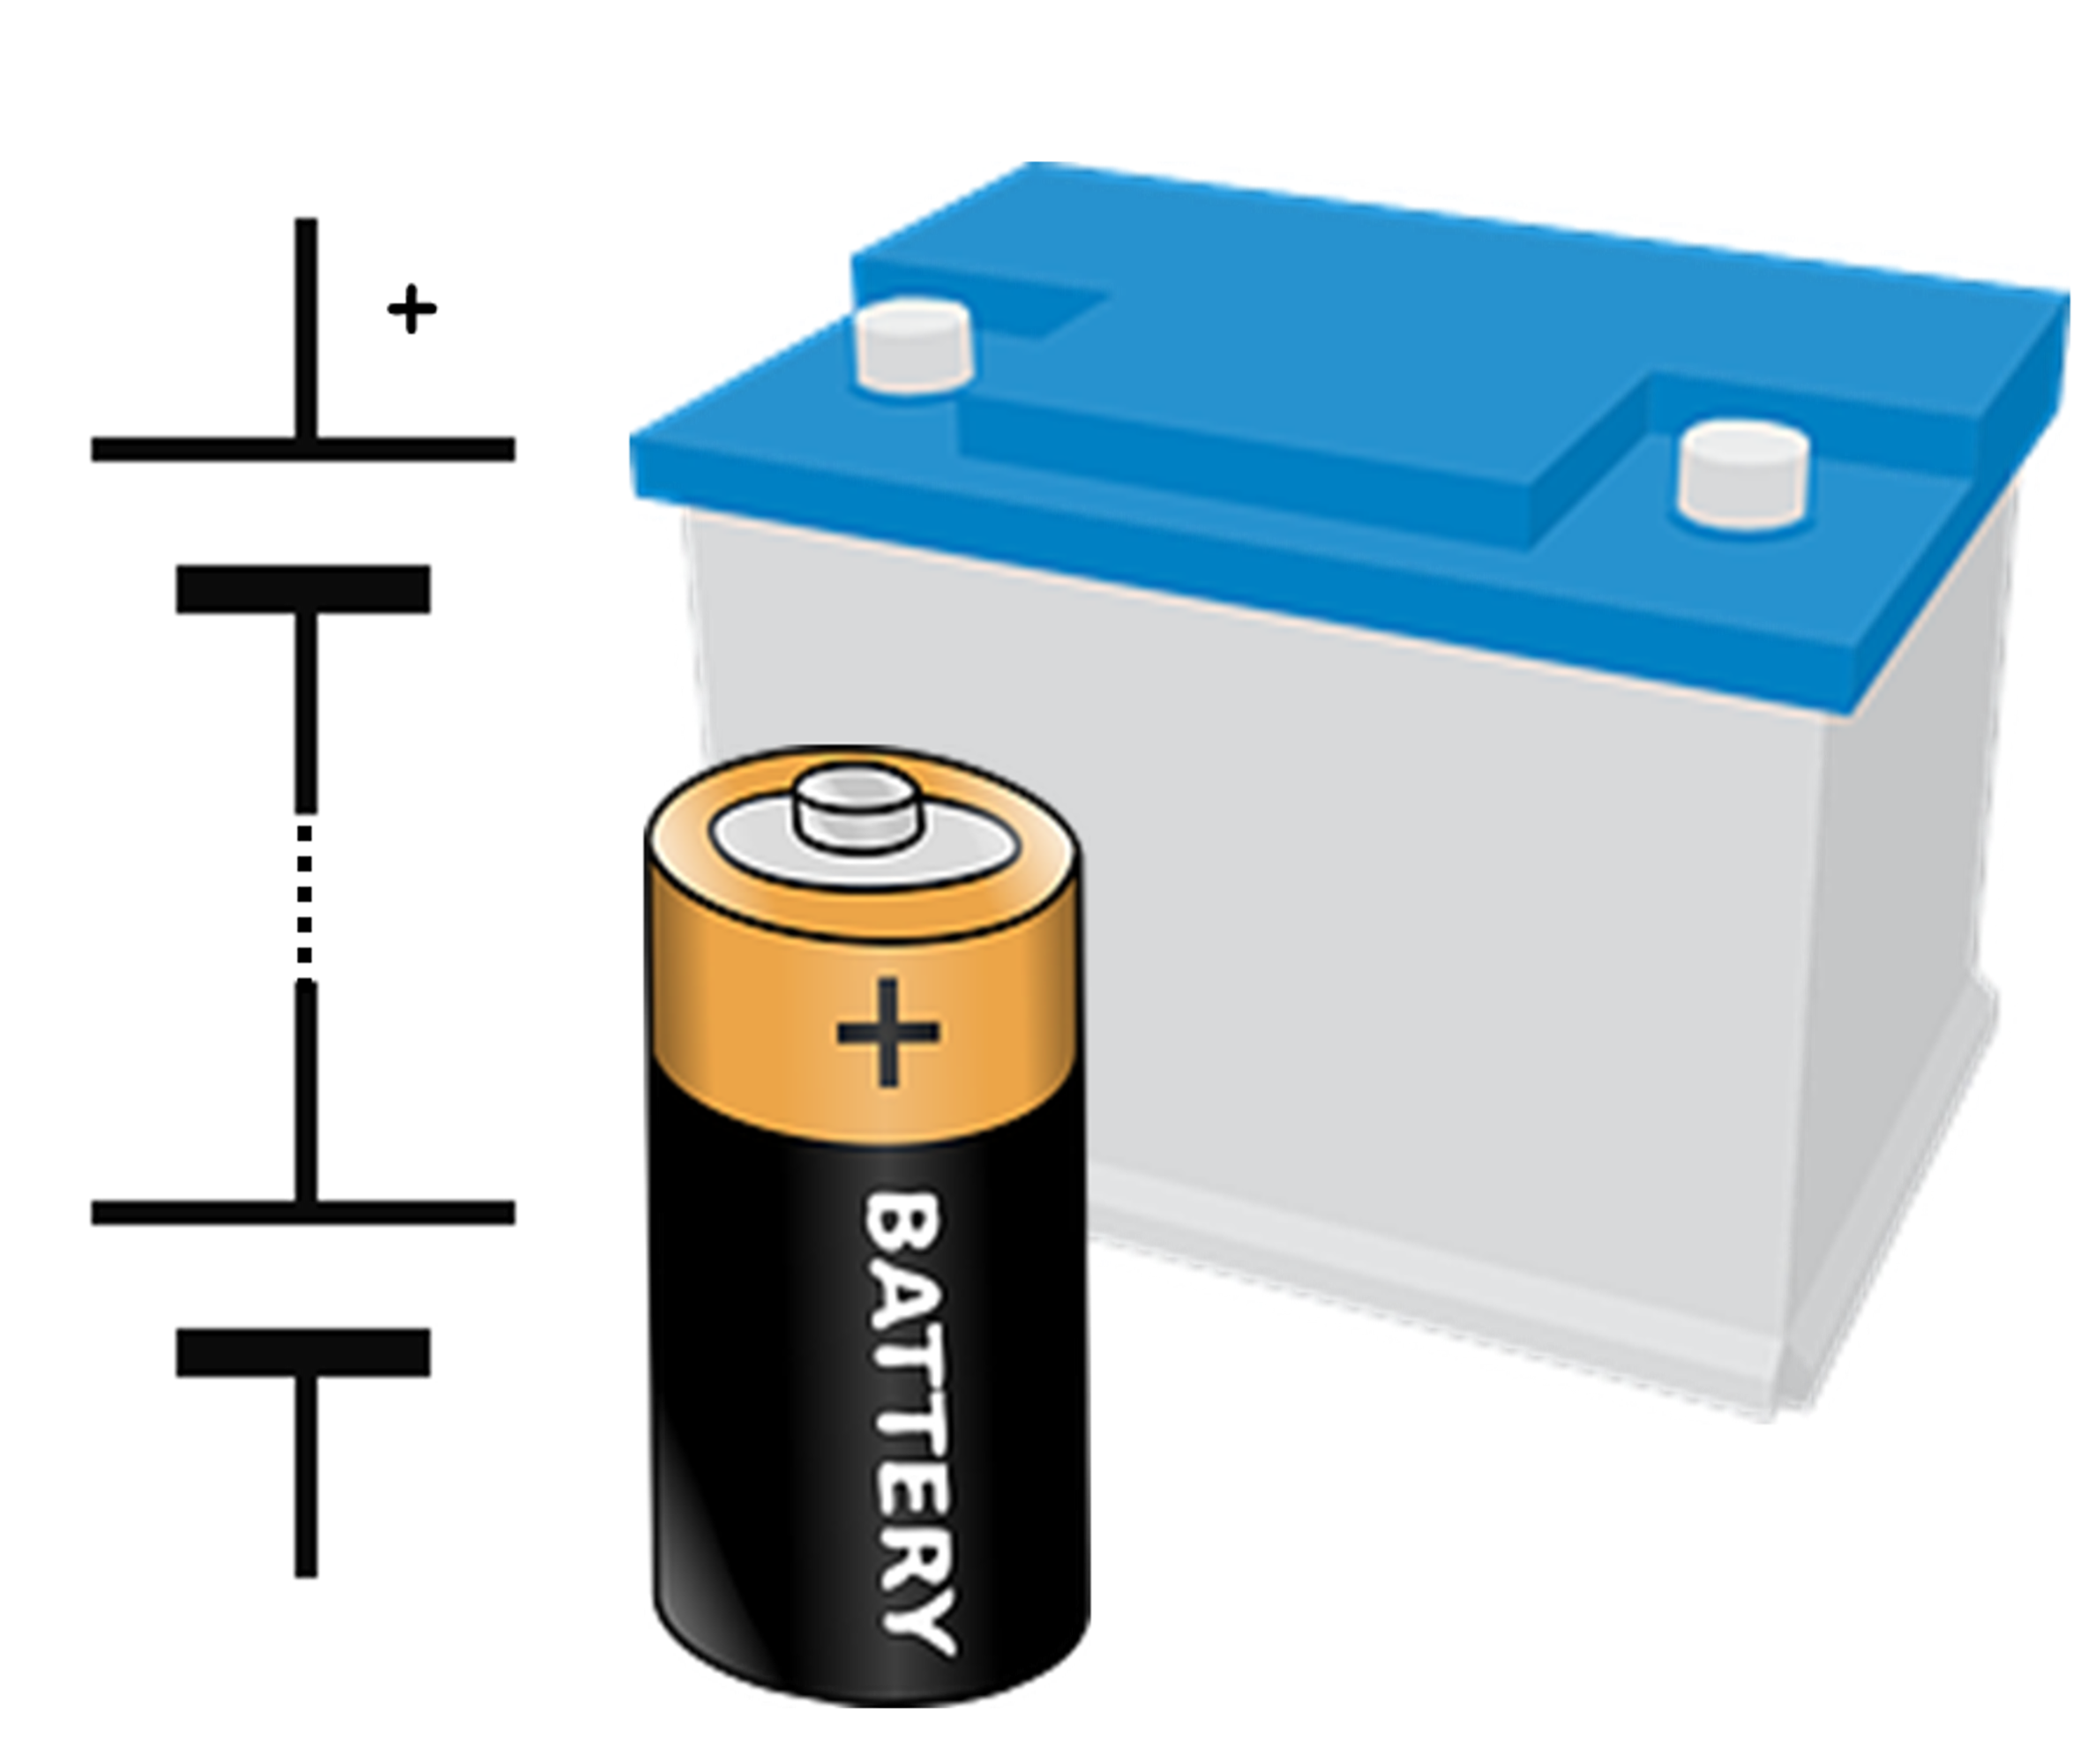 Battery x. Электрические батарейки. Аккумулятор батарейка. Изображение батарейки. Батарейка без фона.